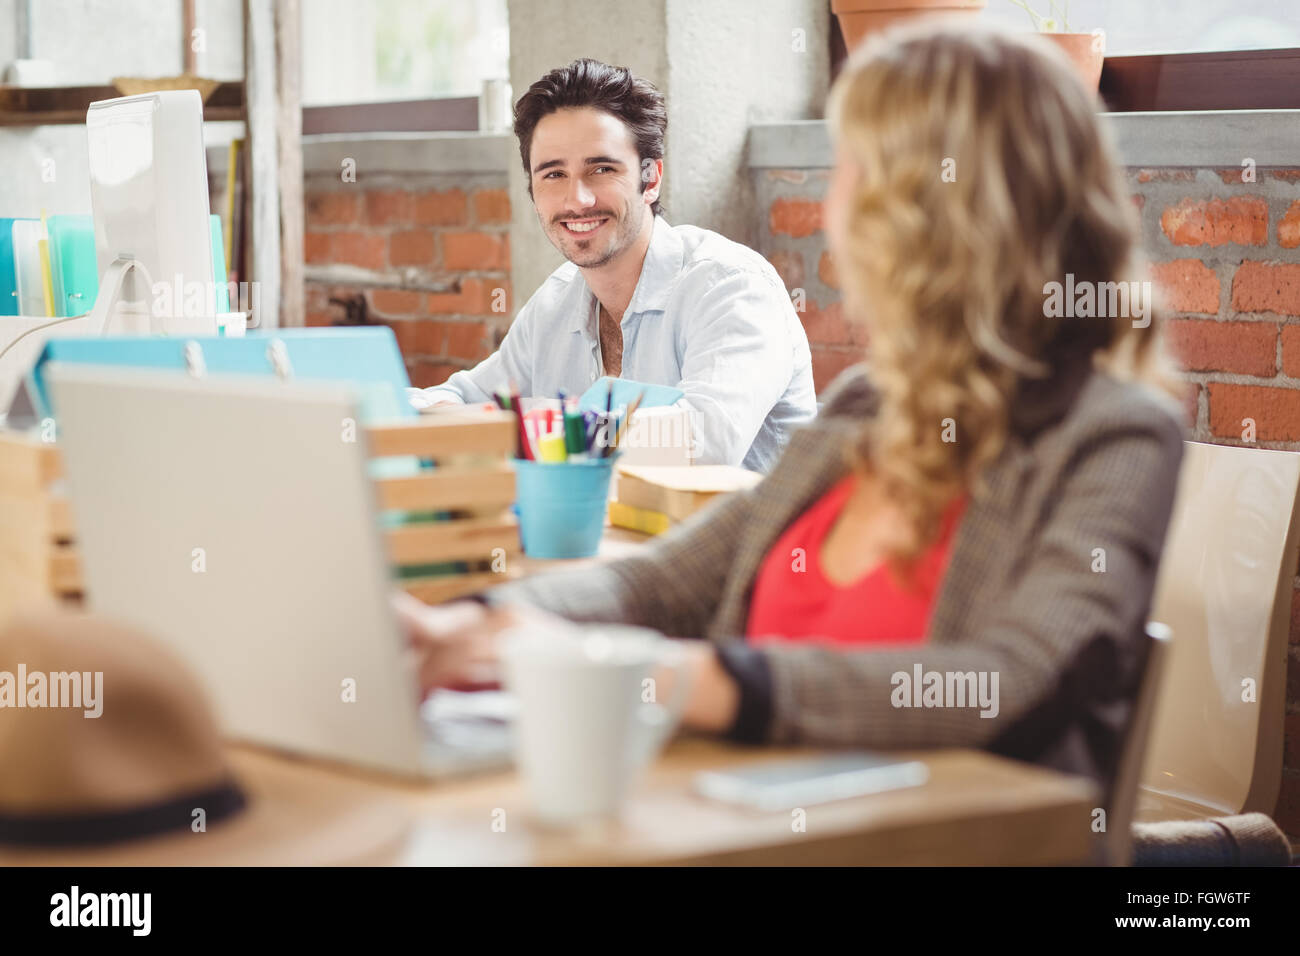 Lächelnd jungen Geschäftsmann arbeiten am Computer im Büro Stockfoto